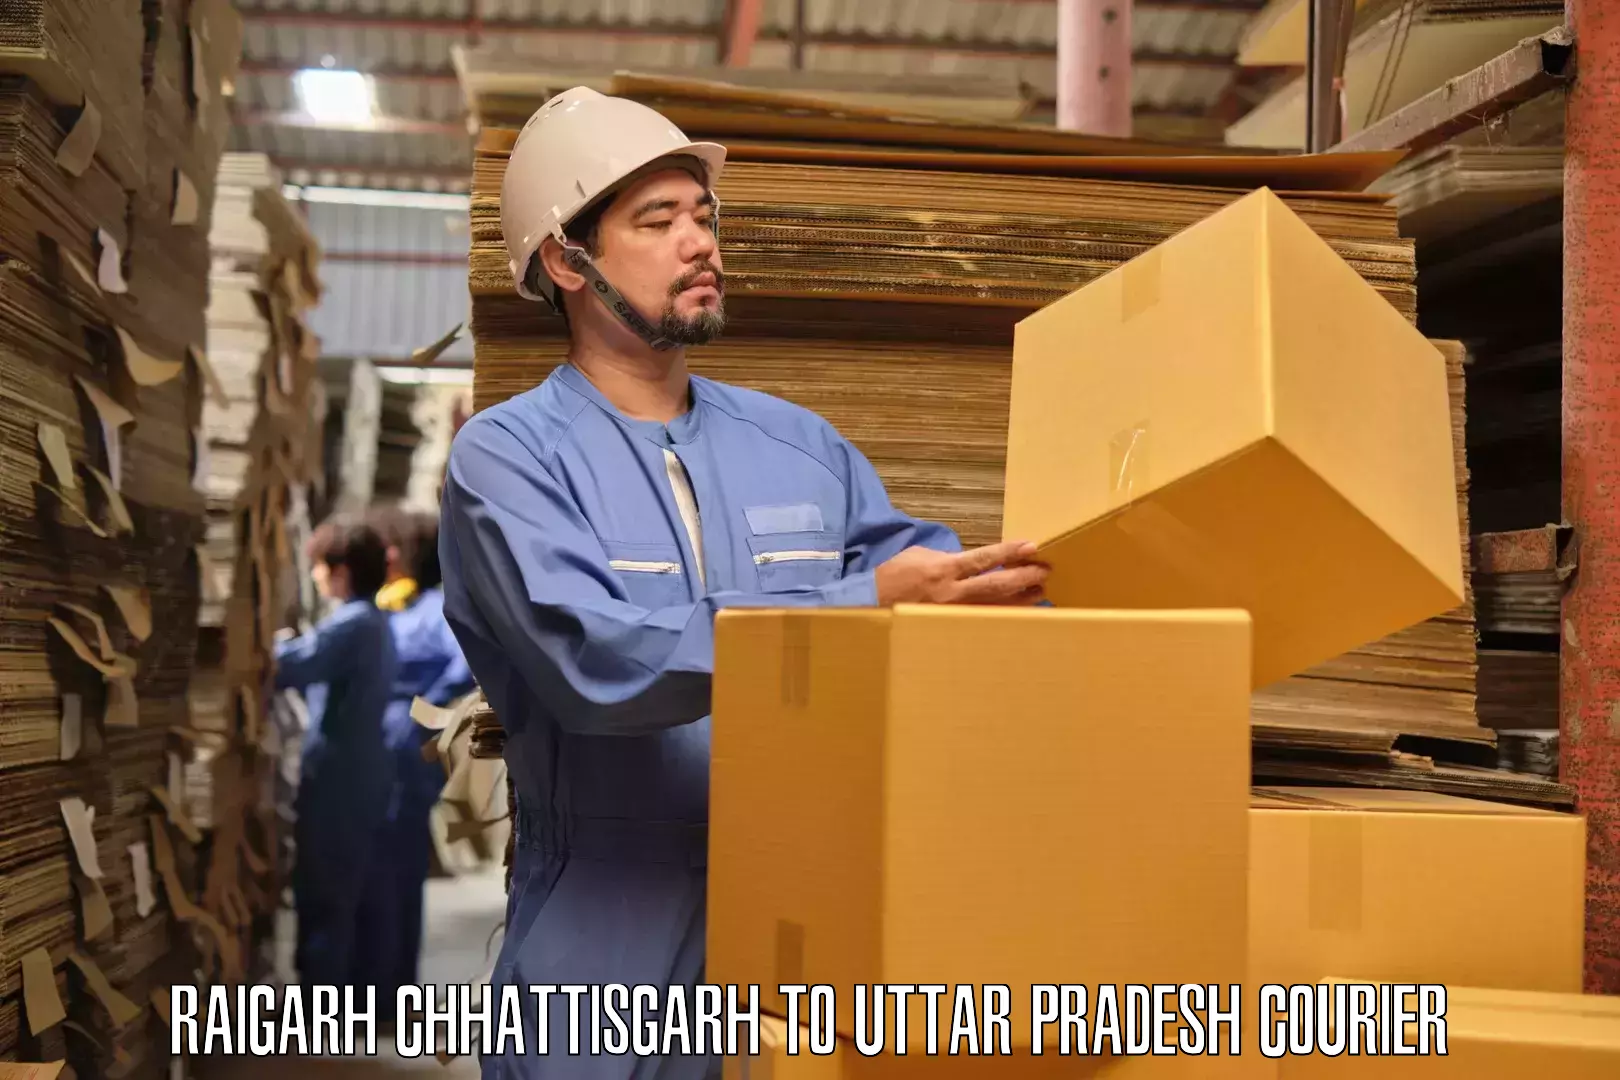 Furniture delivery service Raigarh Chhattisgarh to Barabanki